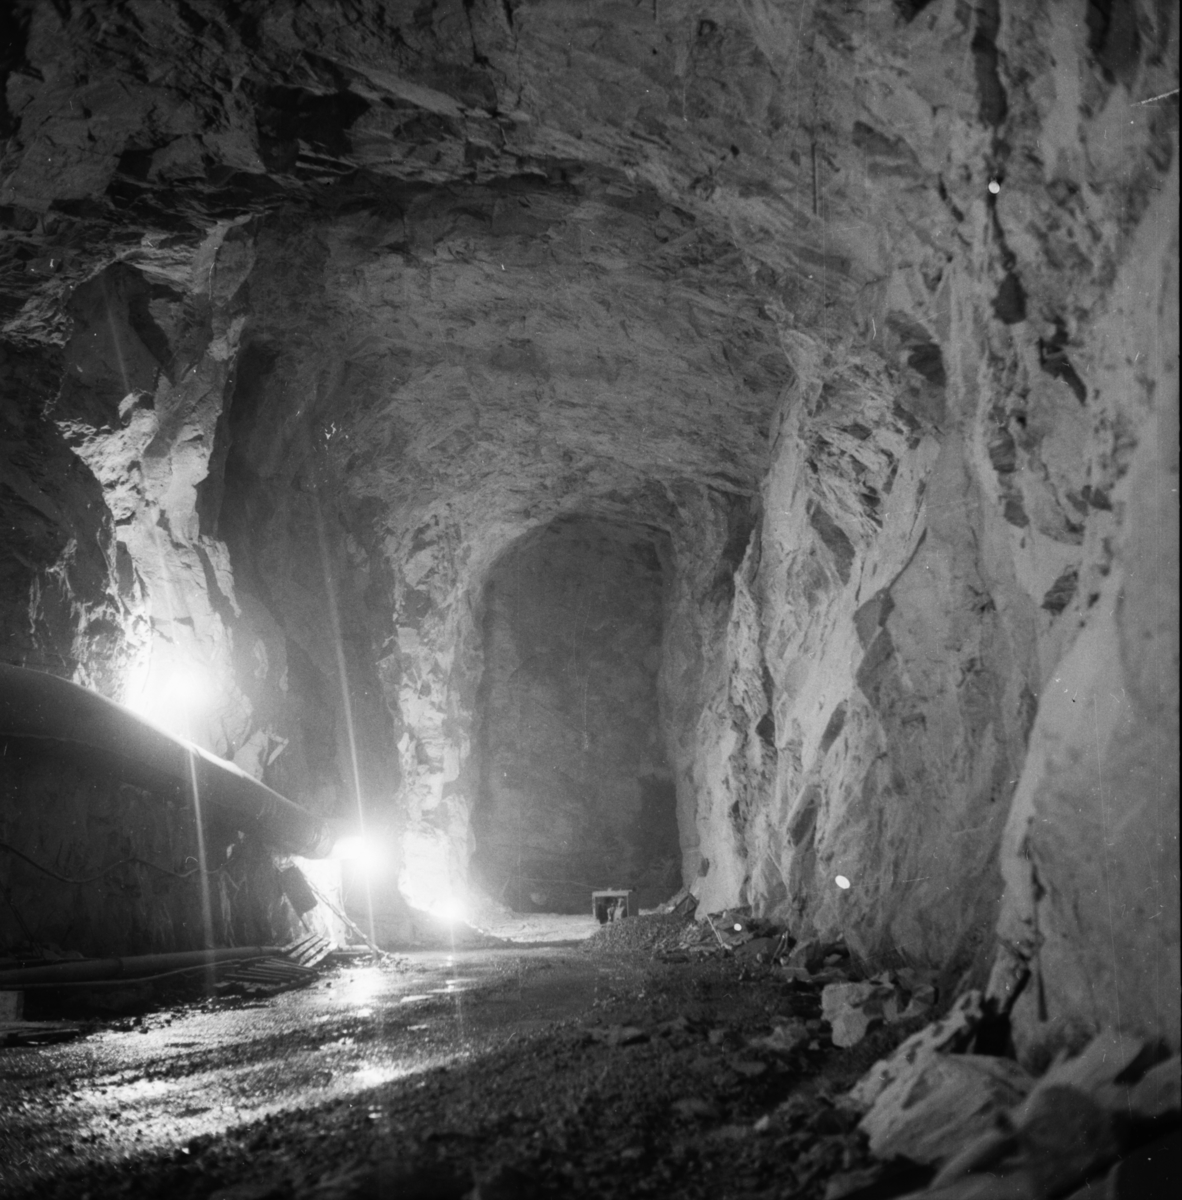 Vardens arkiv. "Utbygging av kraftstasjon. Rjukan III" 06.01.1954